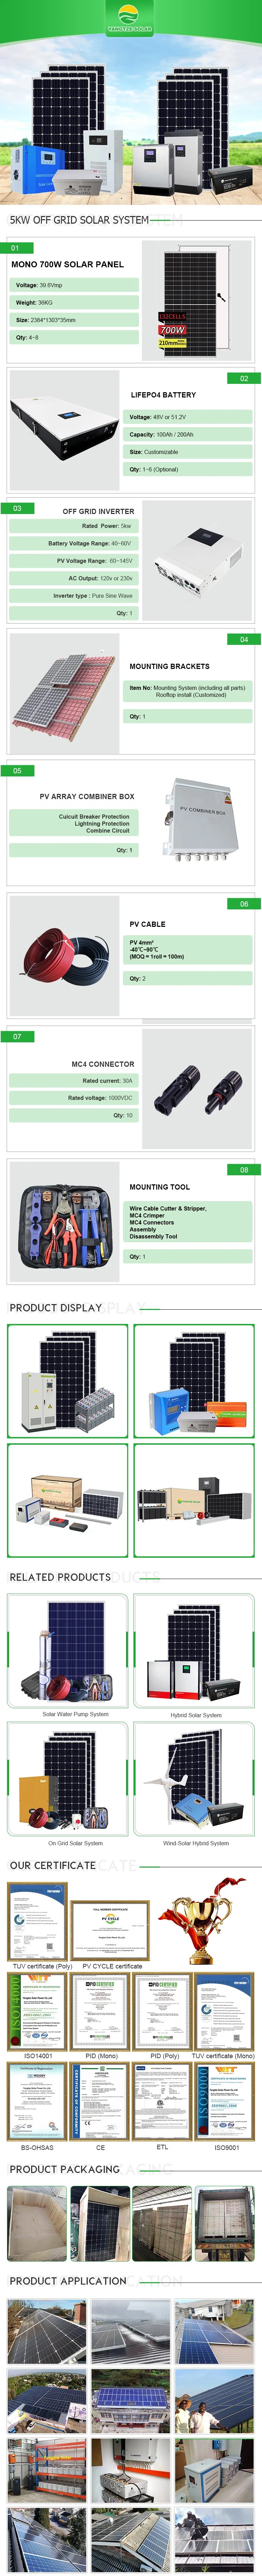 Yangtze 4000W Solar Panel Power Kit for Home Light